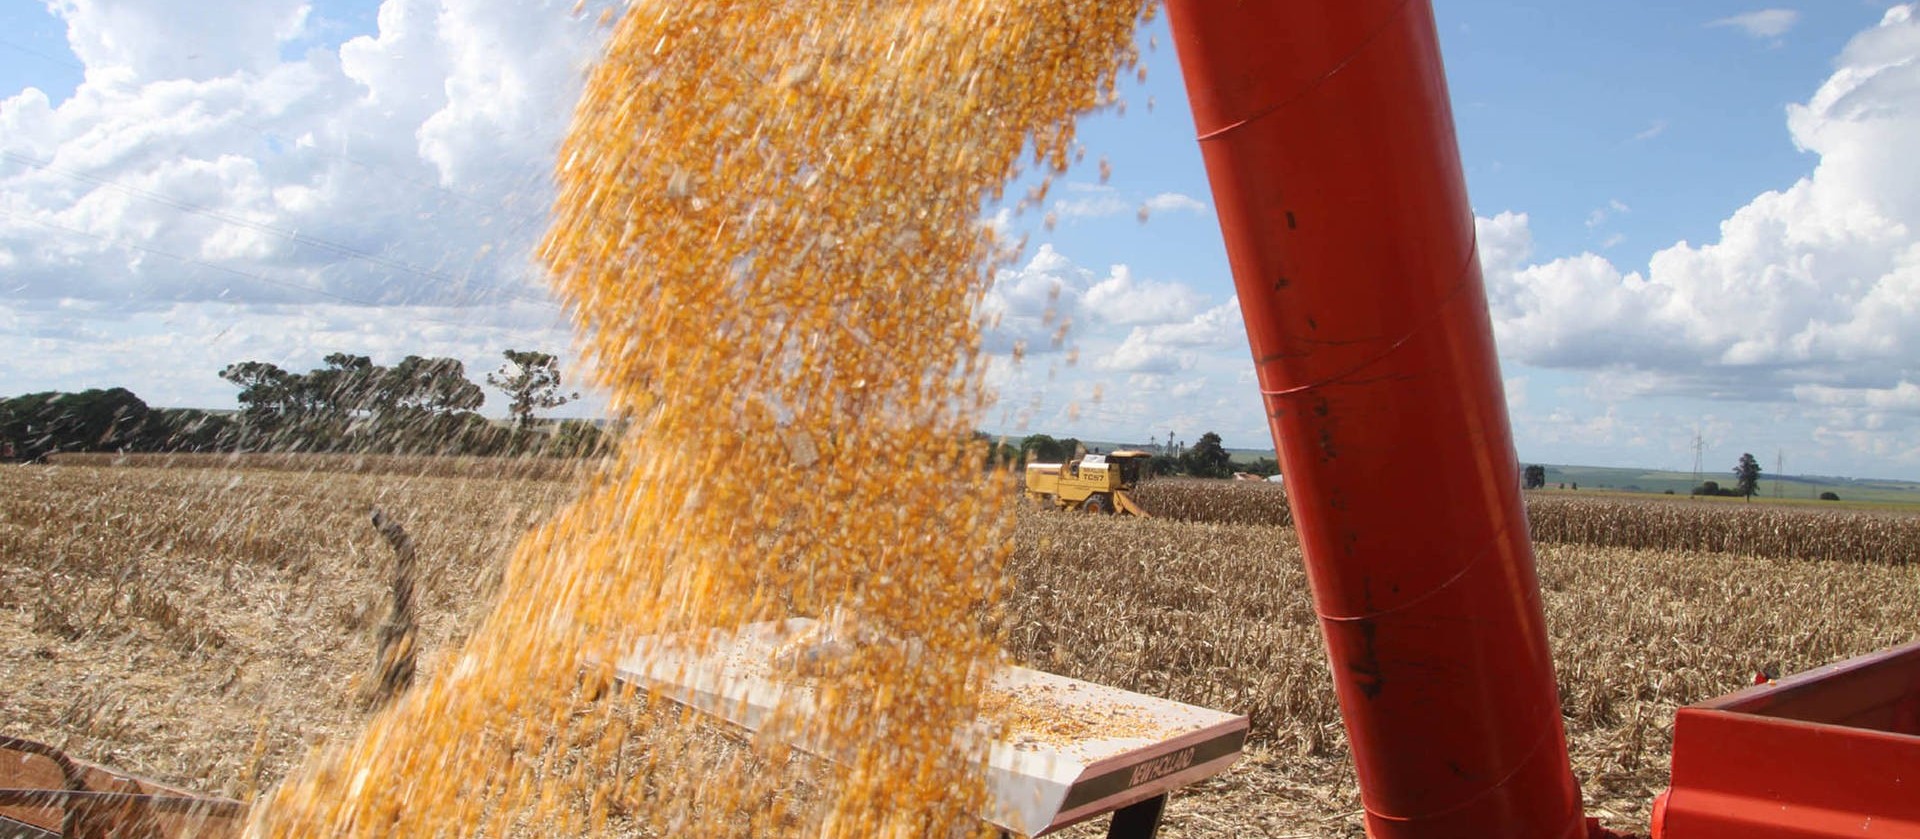 PR: Safra de grãos 2018/19 está sendo encerrada com total estimado de 36,3 mi de toneladas 